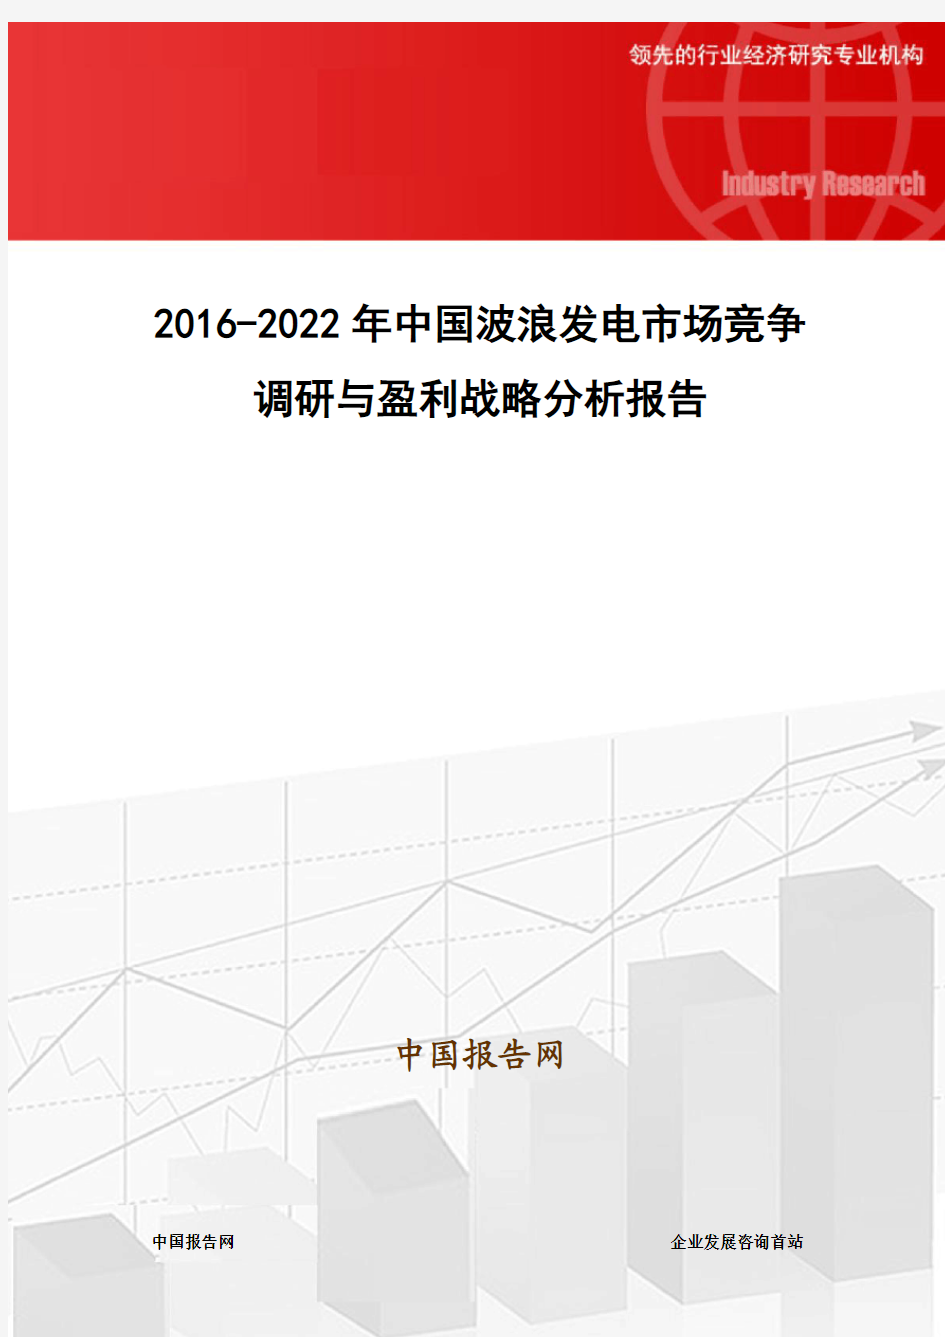 2016-2022年中国波浪发电市场竞争调研与盈利战略分析报告